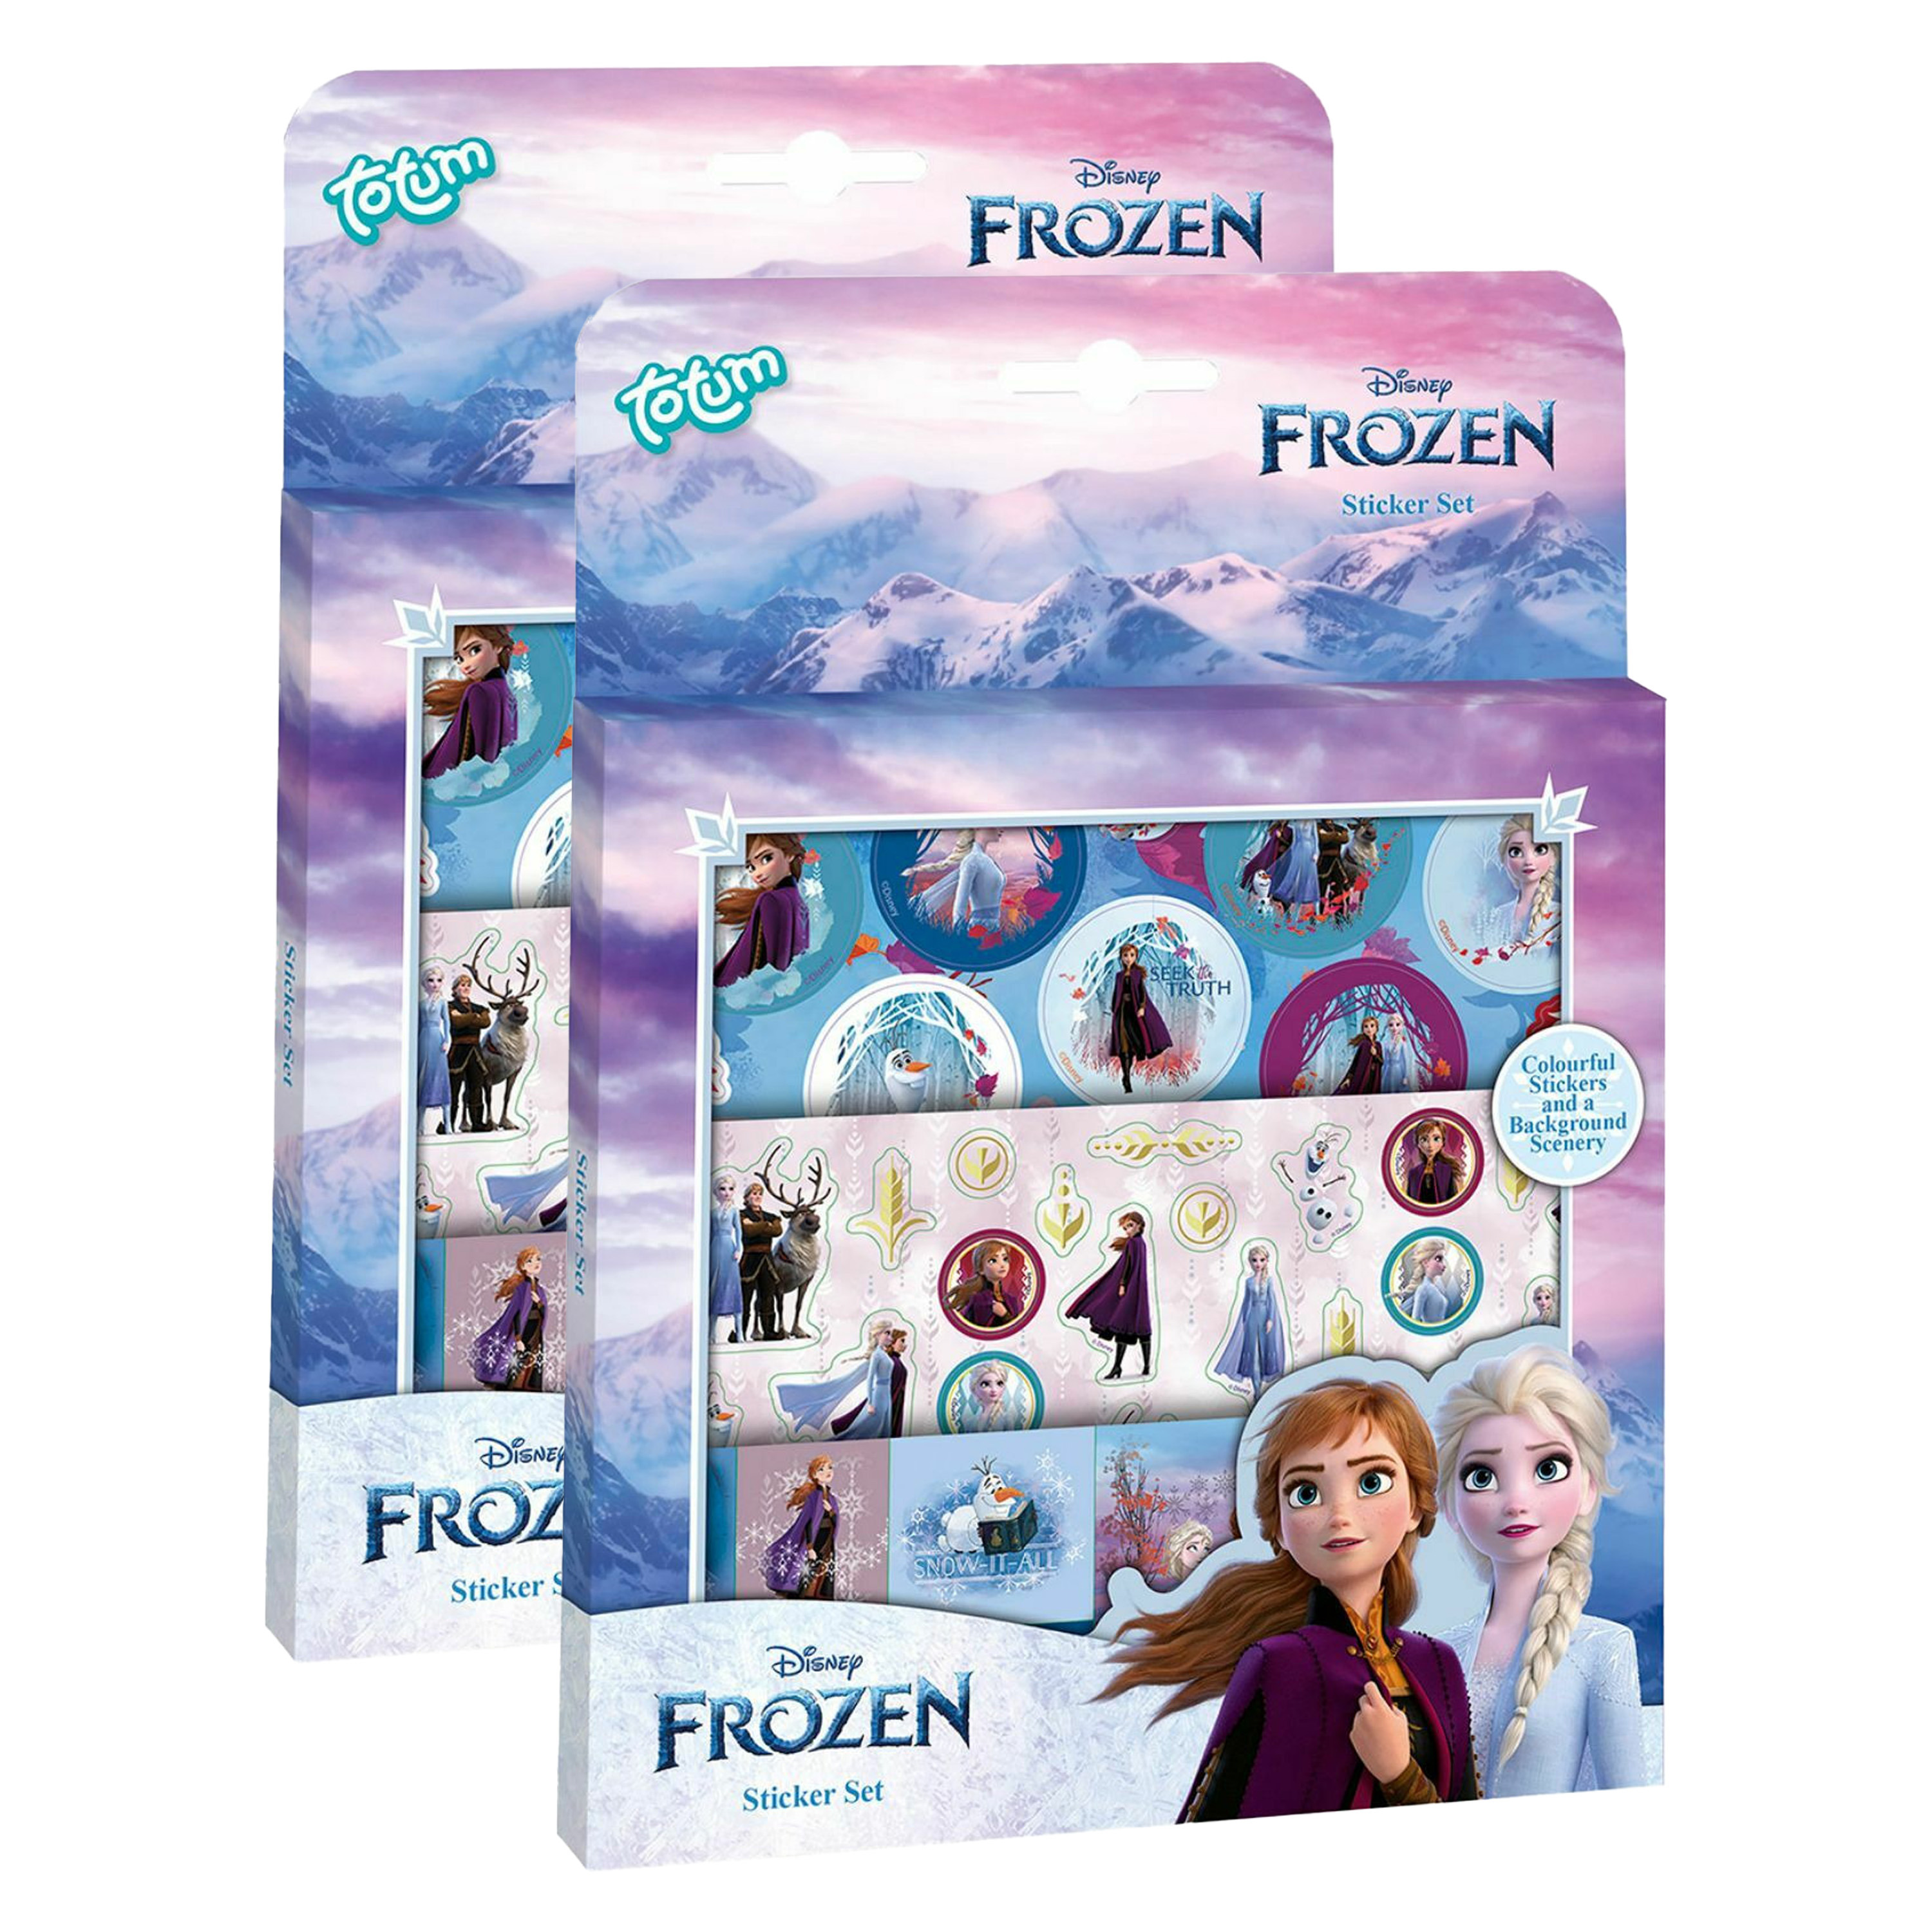 Totum Disney Frozen stickerbox 6x vellen voor kinderen